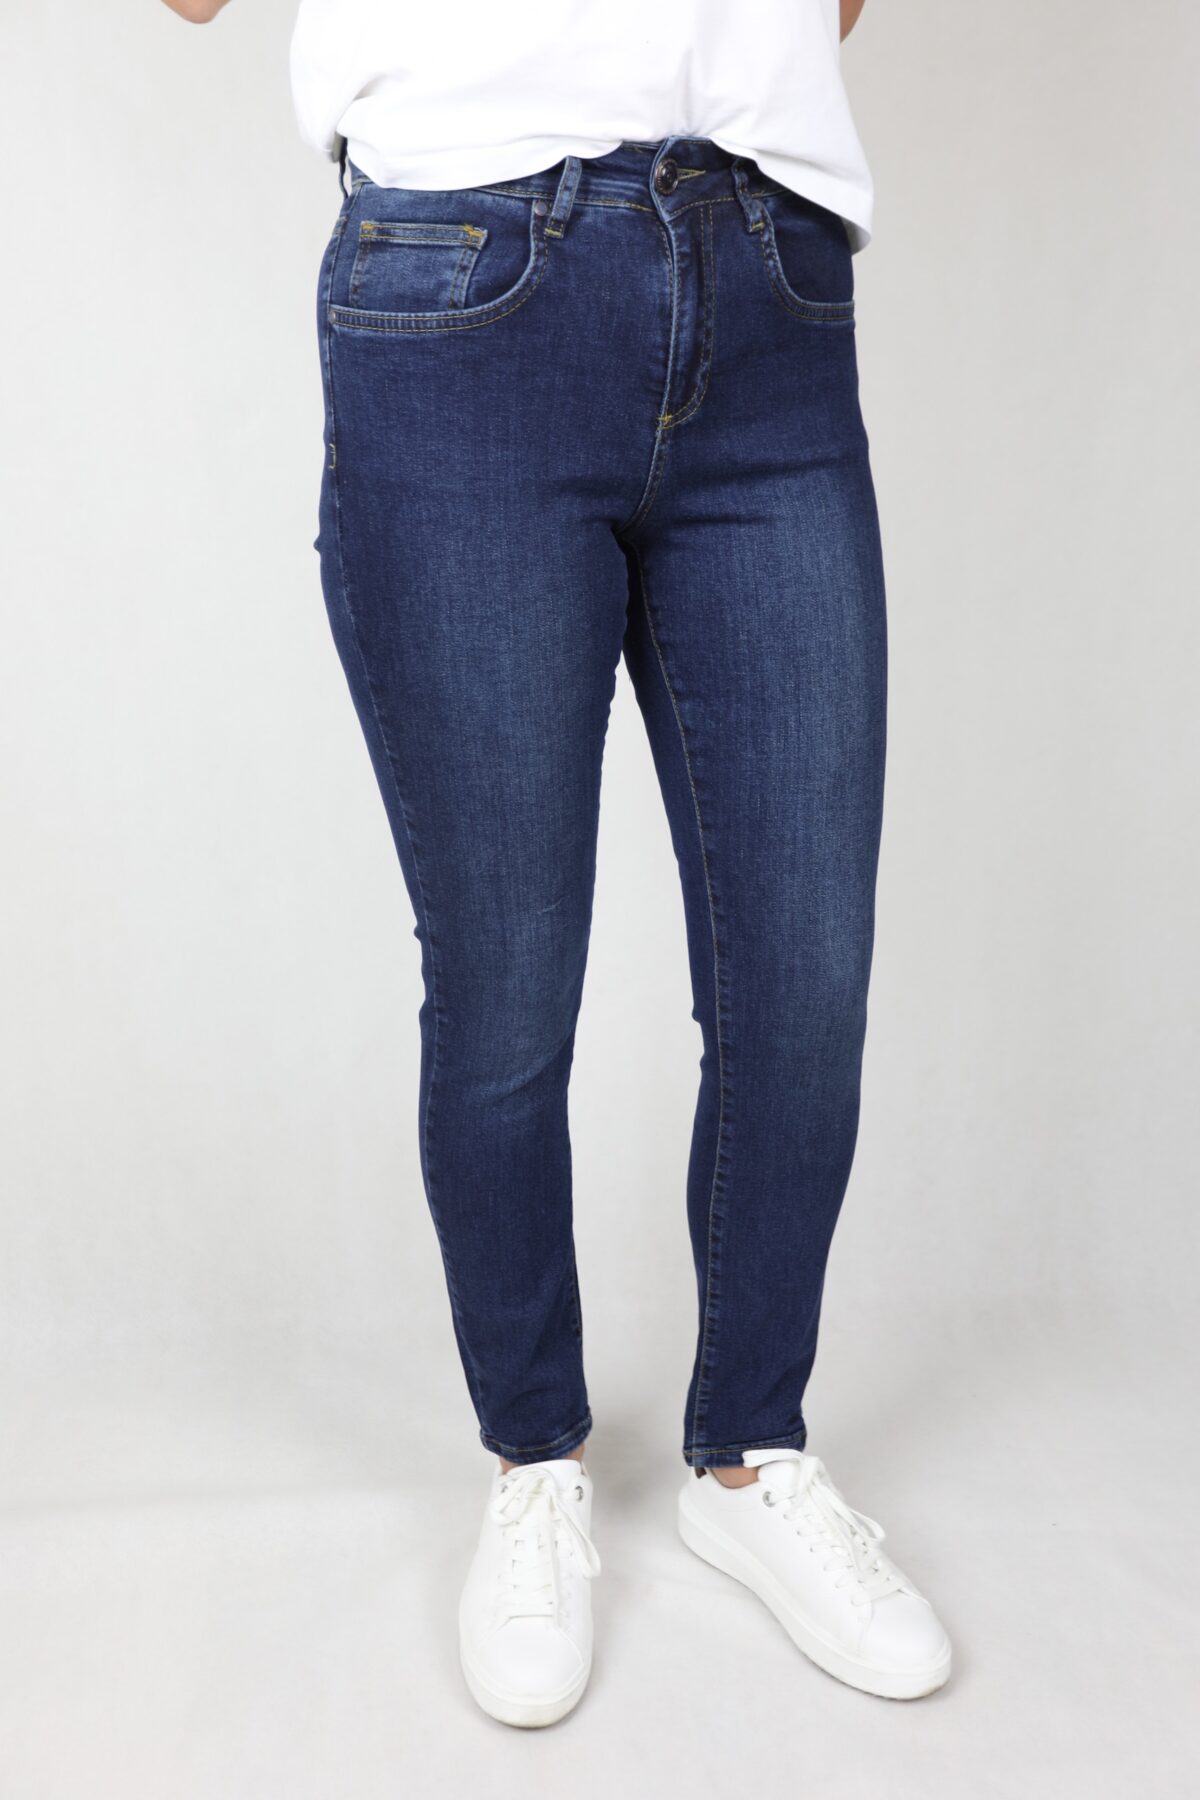 Damskie jeansy stretch, ciemnoniebieskie, z lekkimi przetarciami, nogawka prosta.